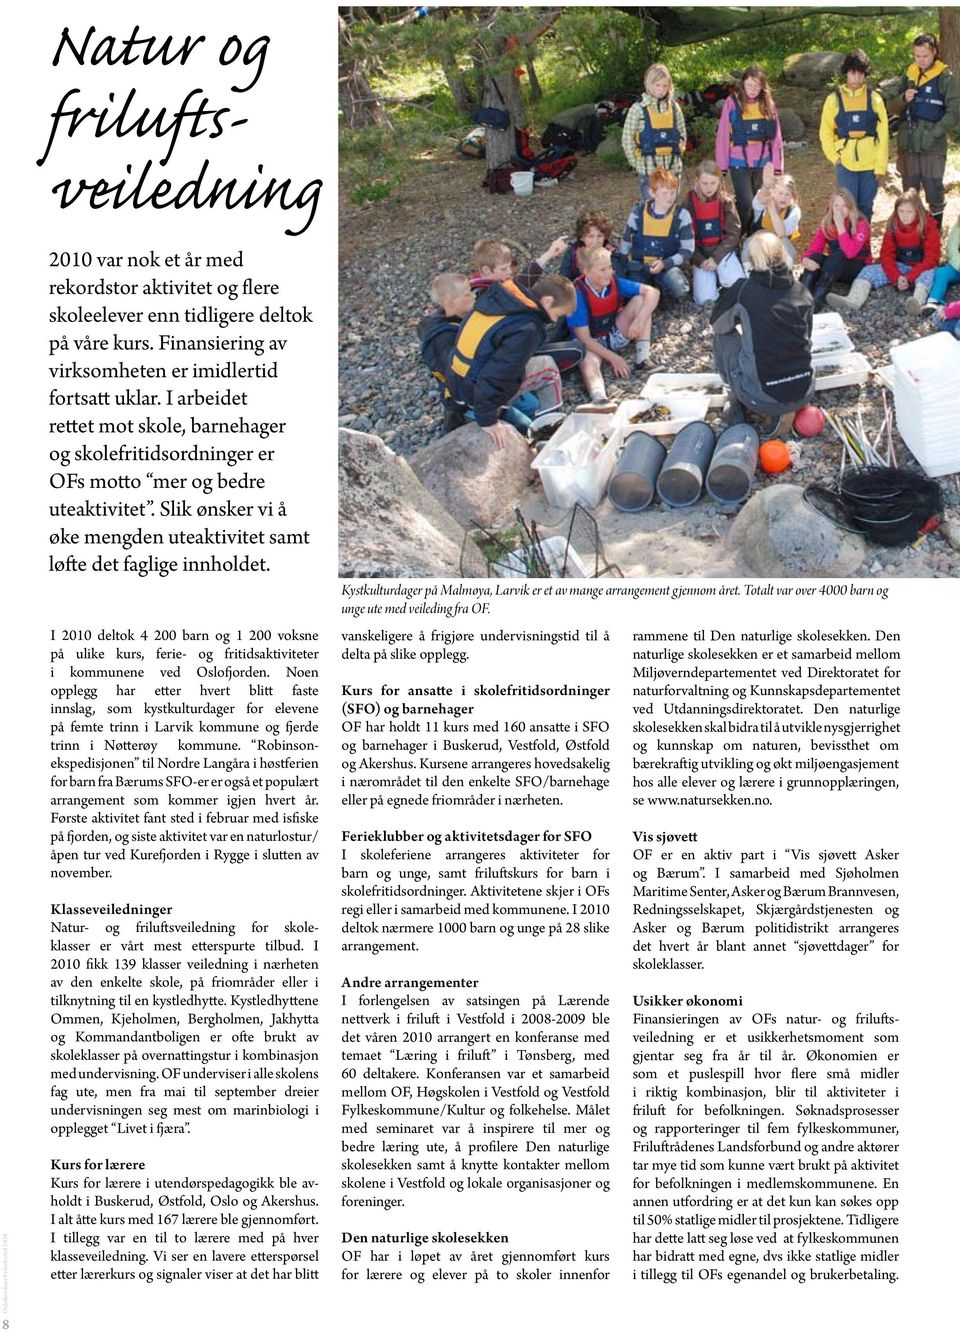 I 2010 deltok 4 200 barn og 1 200 voksne på ulike kurs, ferie- og fritidsaktiviteter i kommunene ved Oslofjorden.